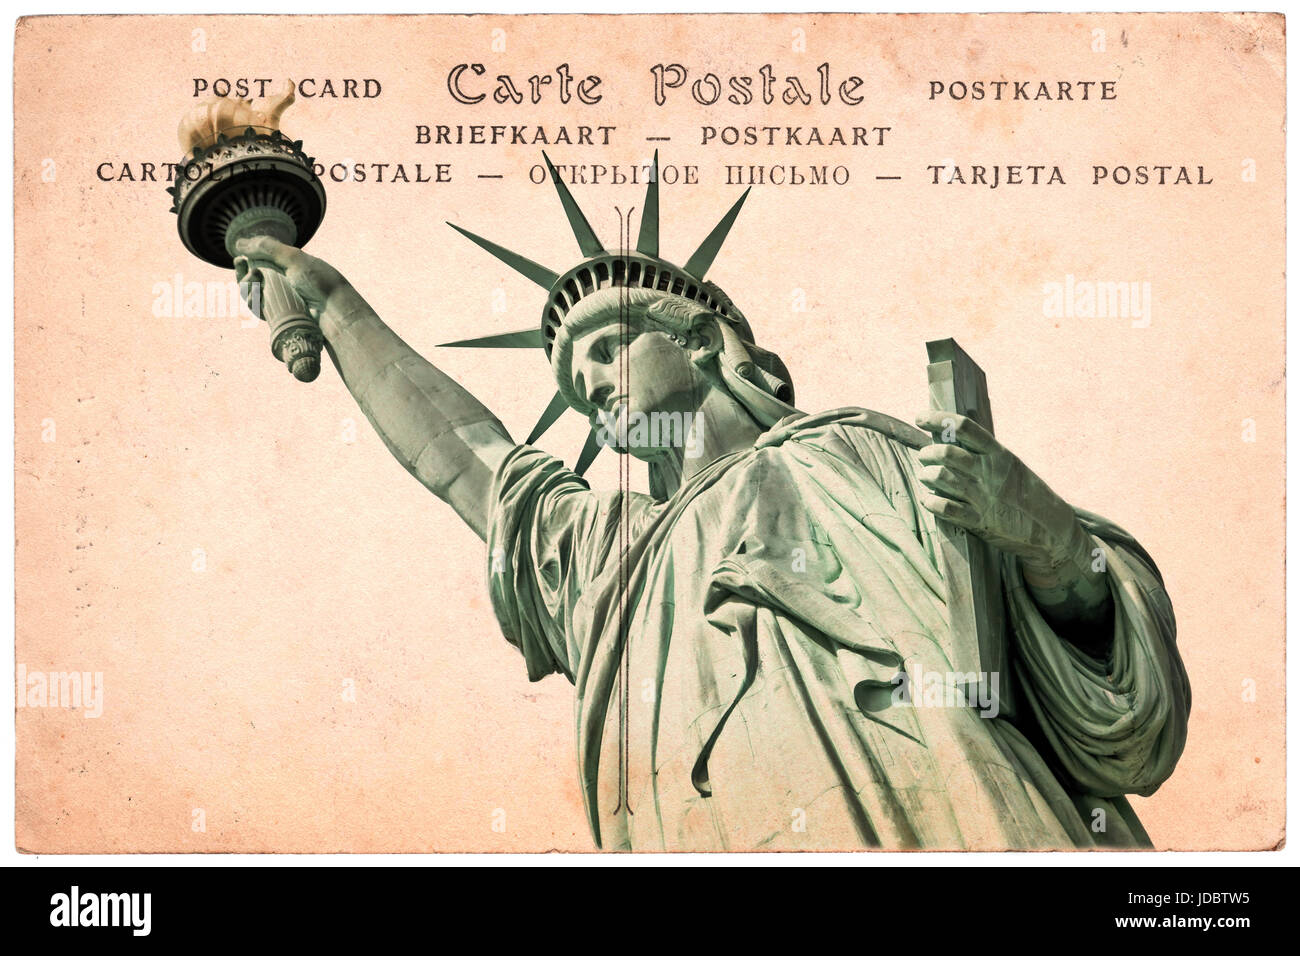 Freiheitsstatue in New York, Collage auf Sepia alte Ansichtskarte Hintergrund, Wort "Postkarte" in mehreren Sprachen geschrieben Stockfoto